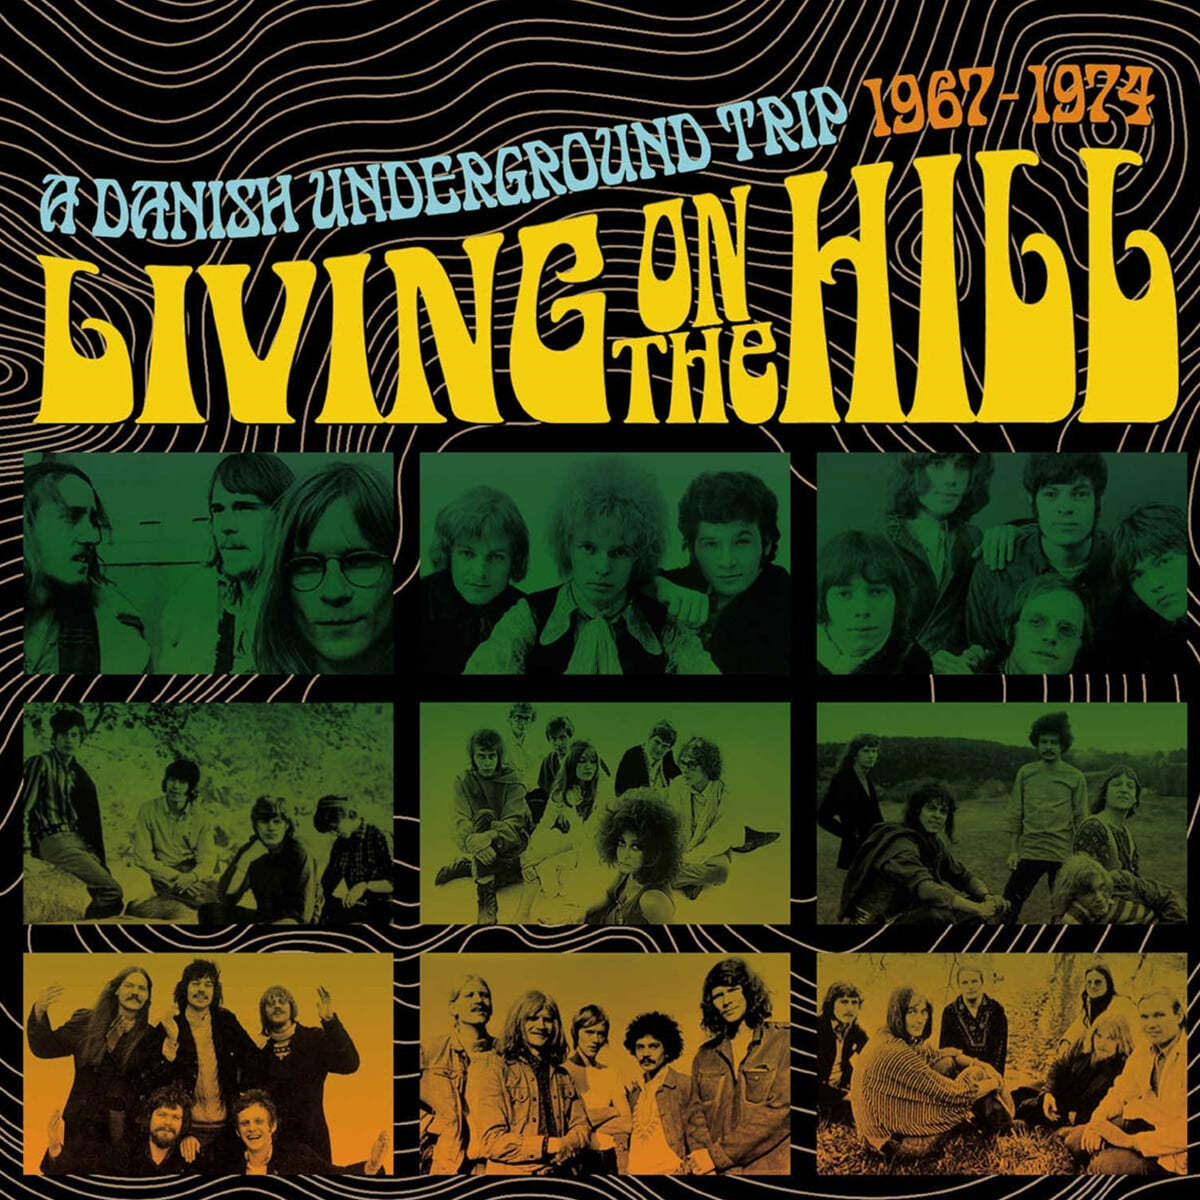 락 컴필레이션 - 리빙 온 더 힐 (Living On The Hill A Danish Underground Trip 1967-1974) 